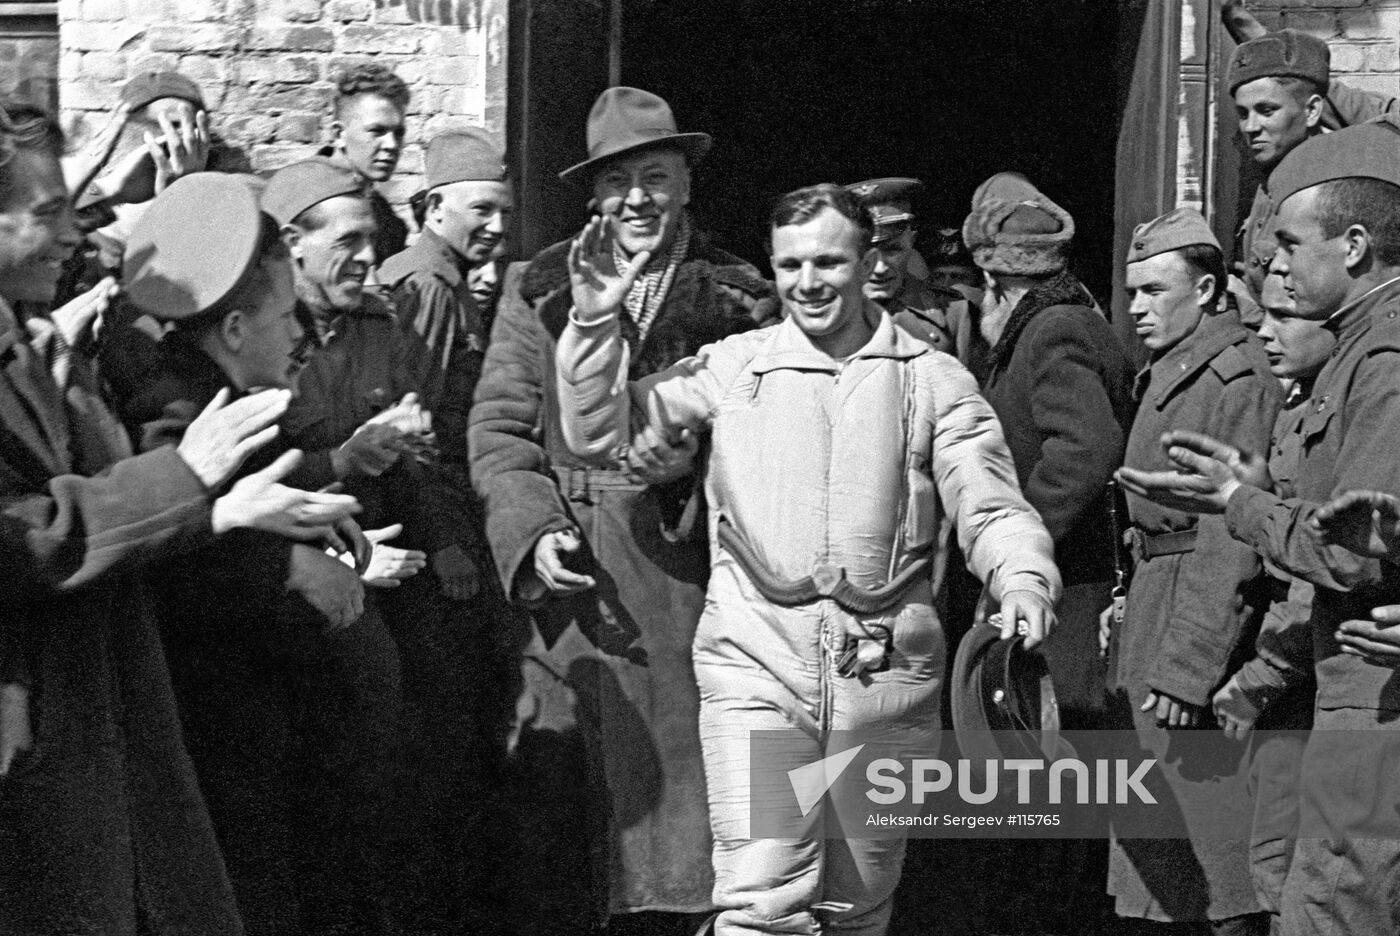 Gagarin after landing